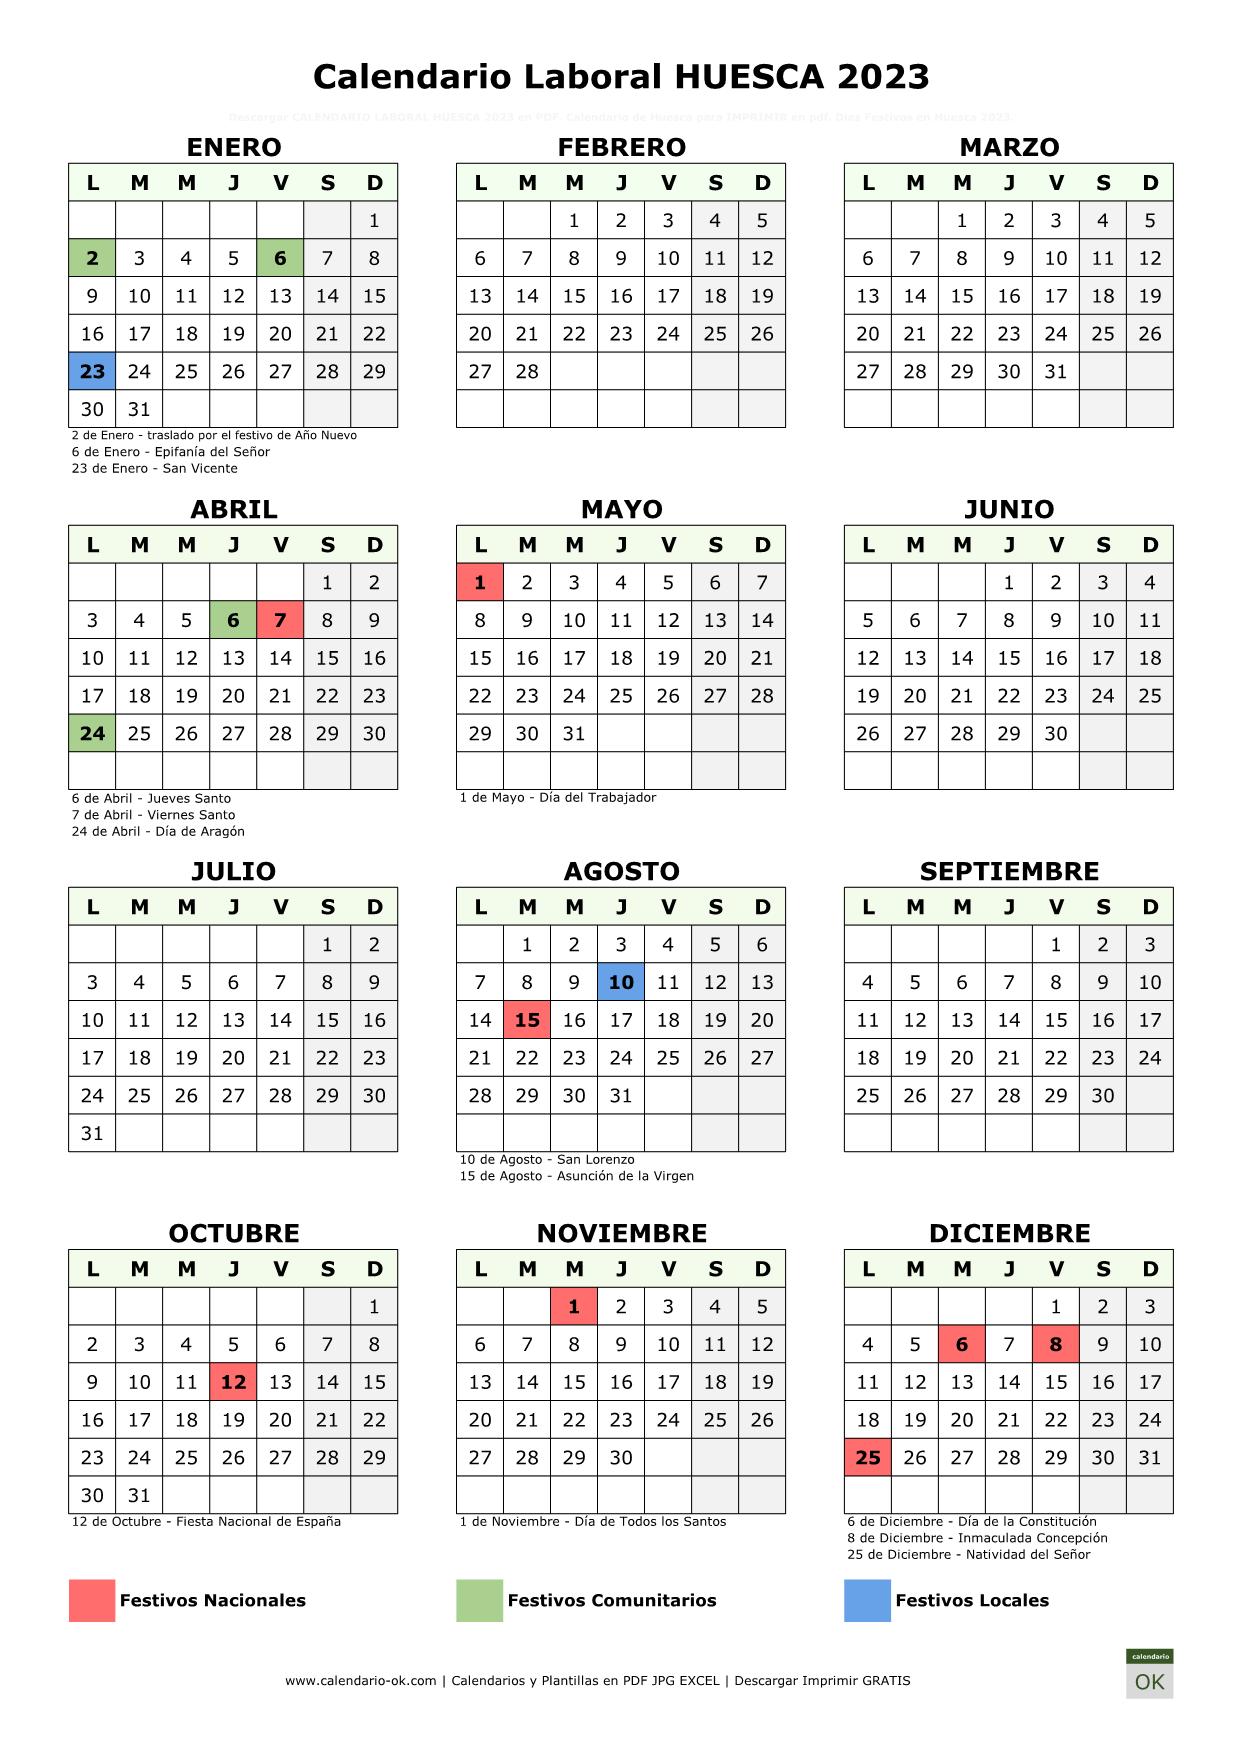 Calendario Laboral Huesca 2023 vertical